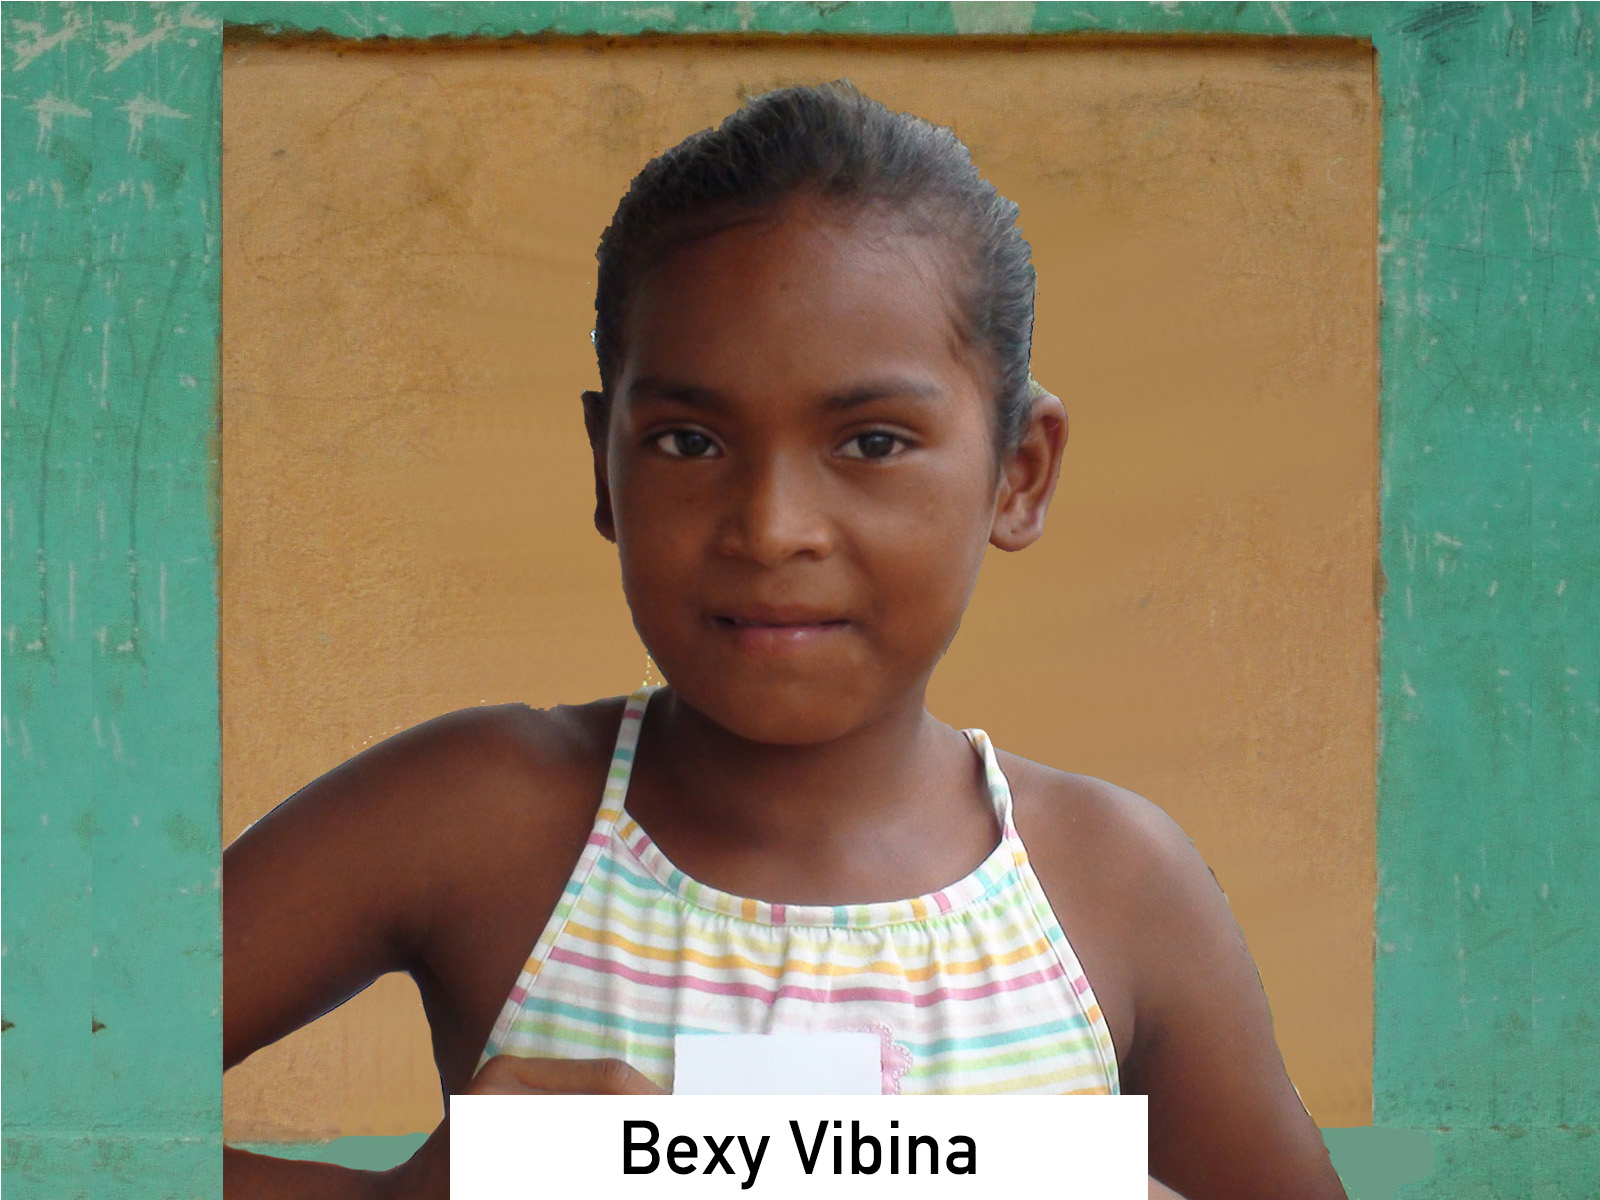 103 - Bexy Vibina.jpg